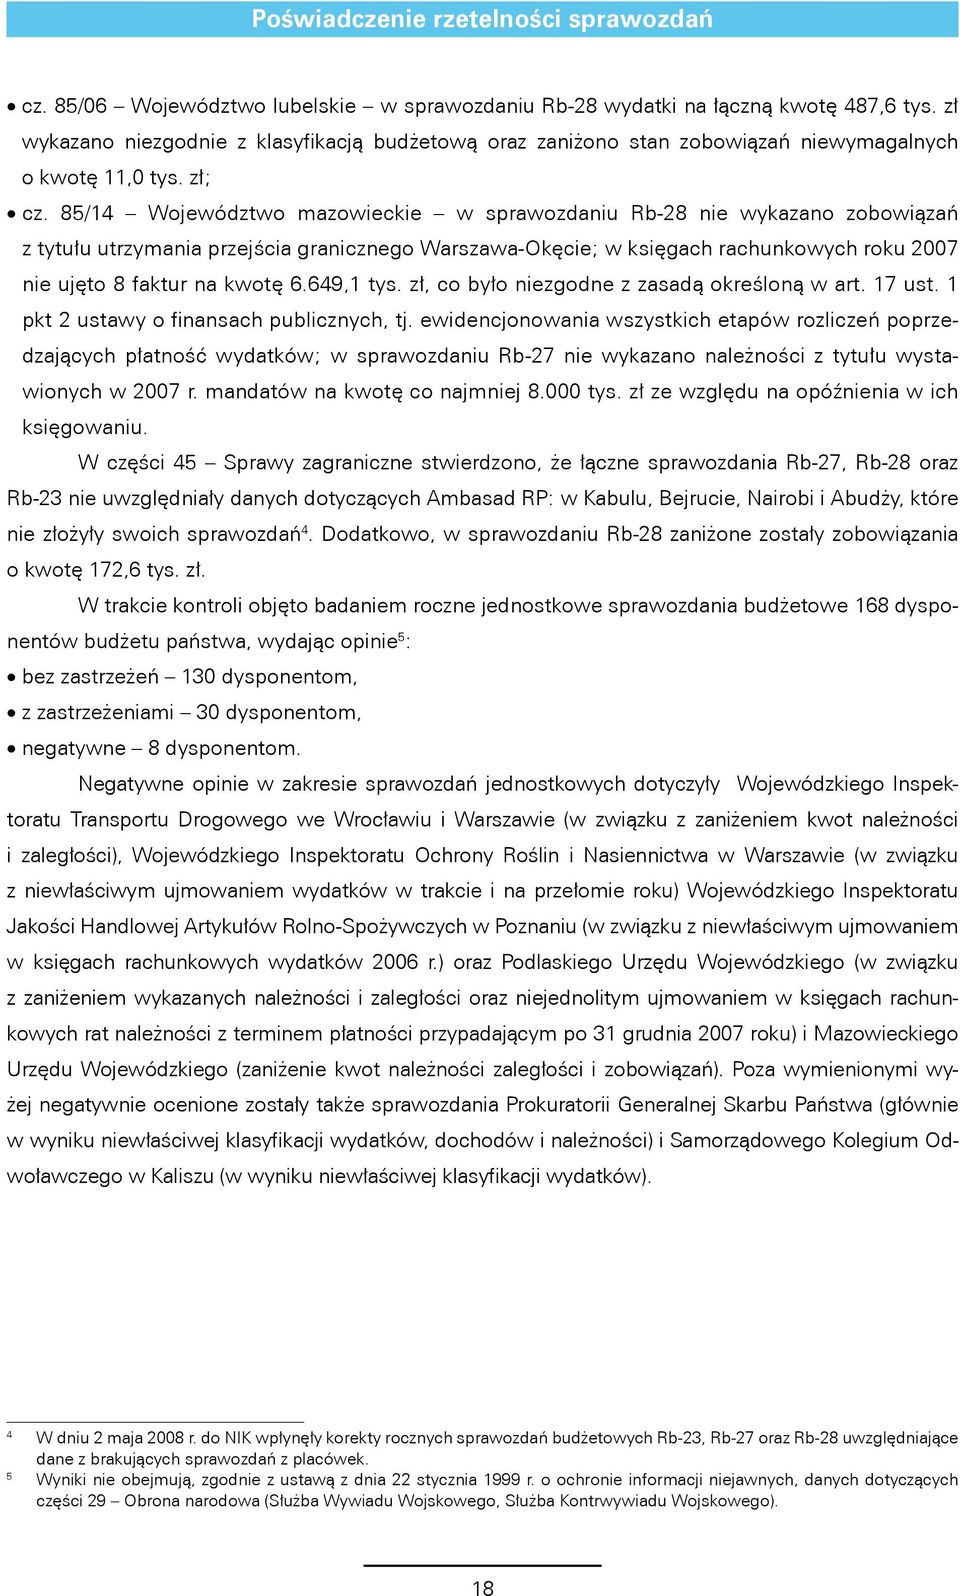 85/14 Województwo mazowieckie w sprawozdaniu Rb-28 nie wykazano zobowiązań z tytułu utrzymania przejścia granicznego Warszawa-Okęcie; w księgach rachunkowych roku 2007 nie ujęto 8 faktur na kwotę 6.